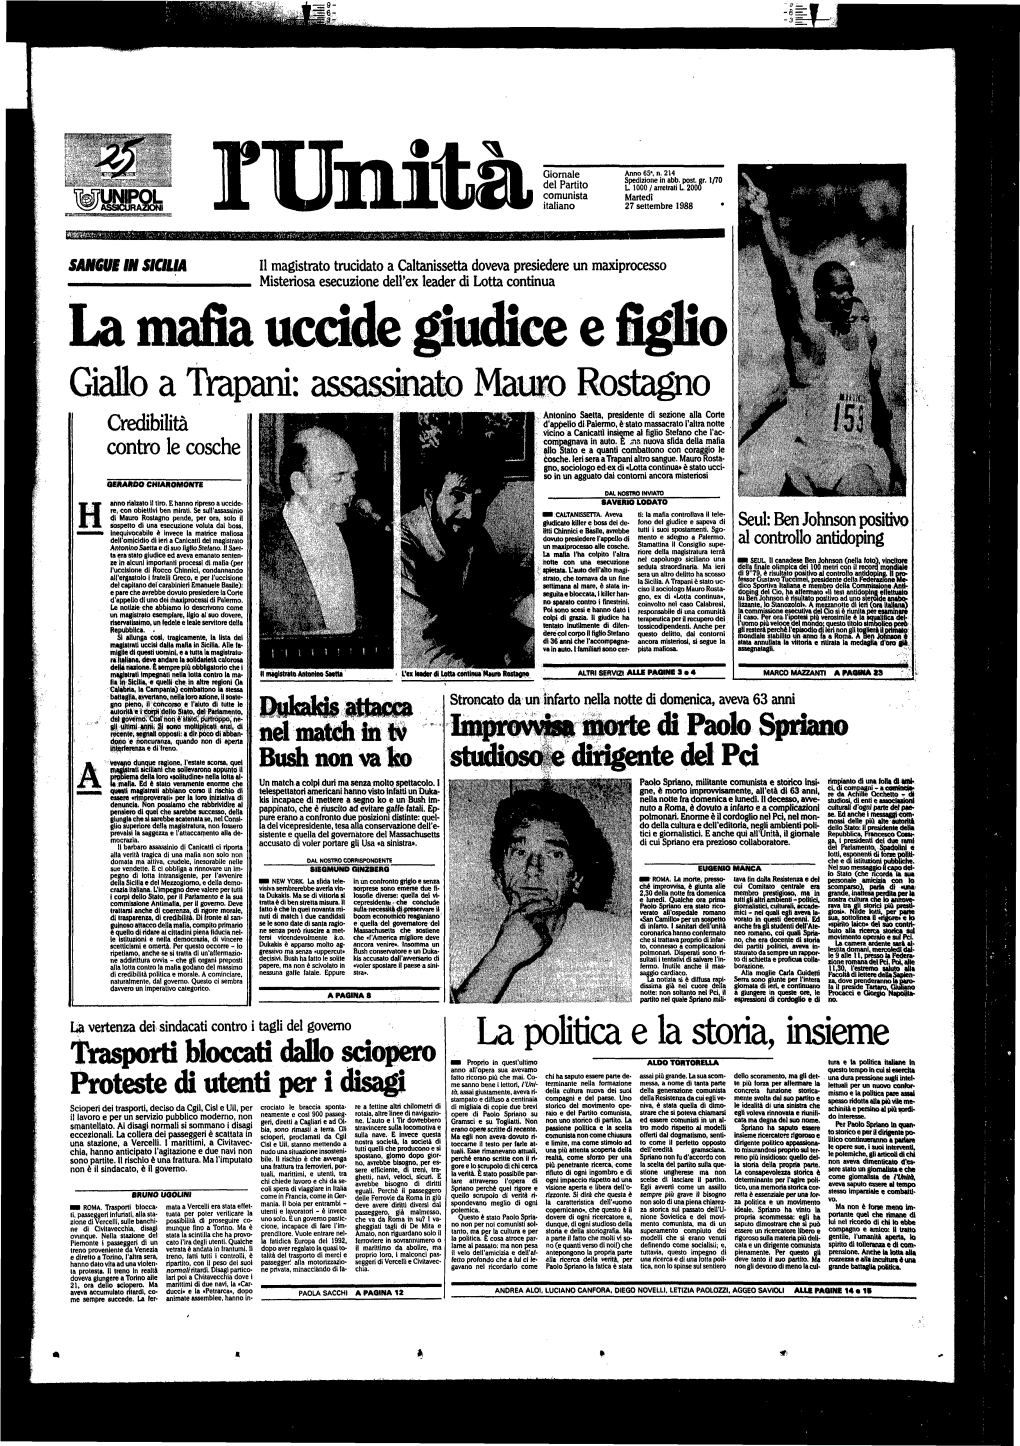 La Mafia Uccìde Giudice E Figli» Giallo a Tyapani: Assassinato Mai» Rostagno